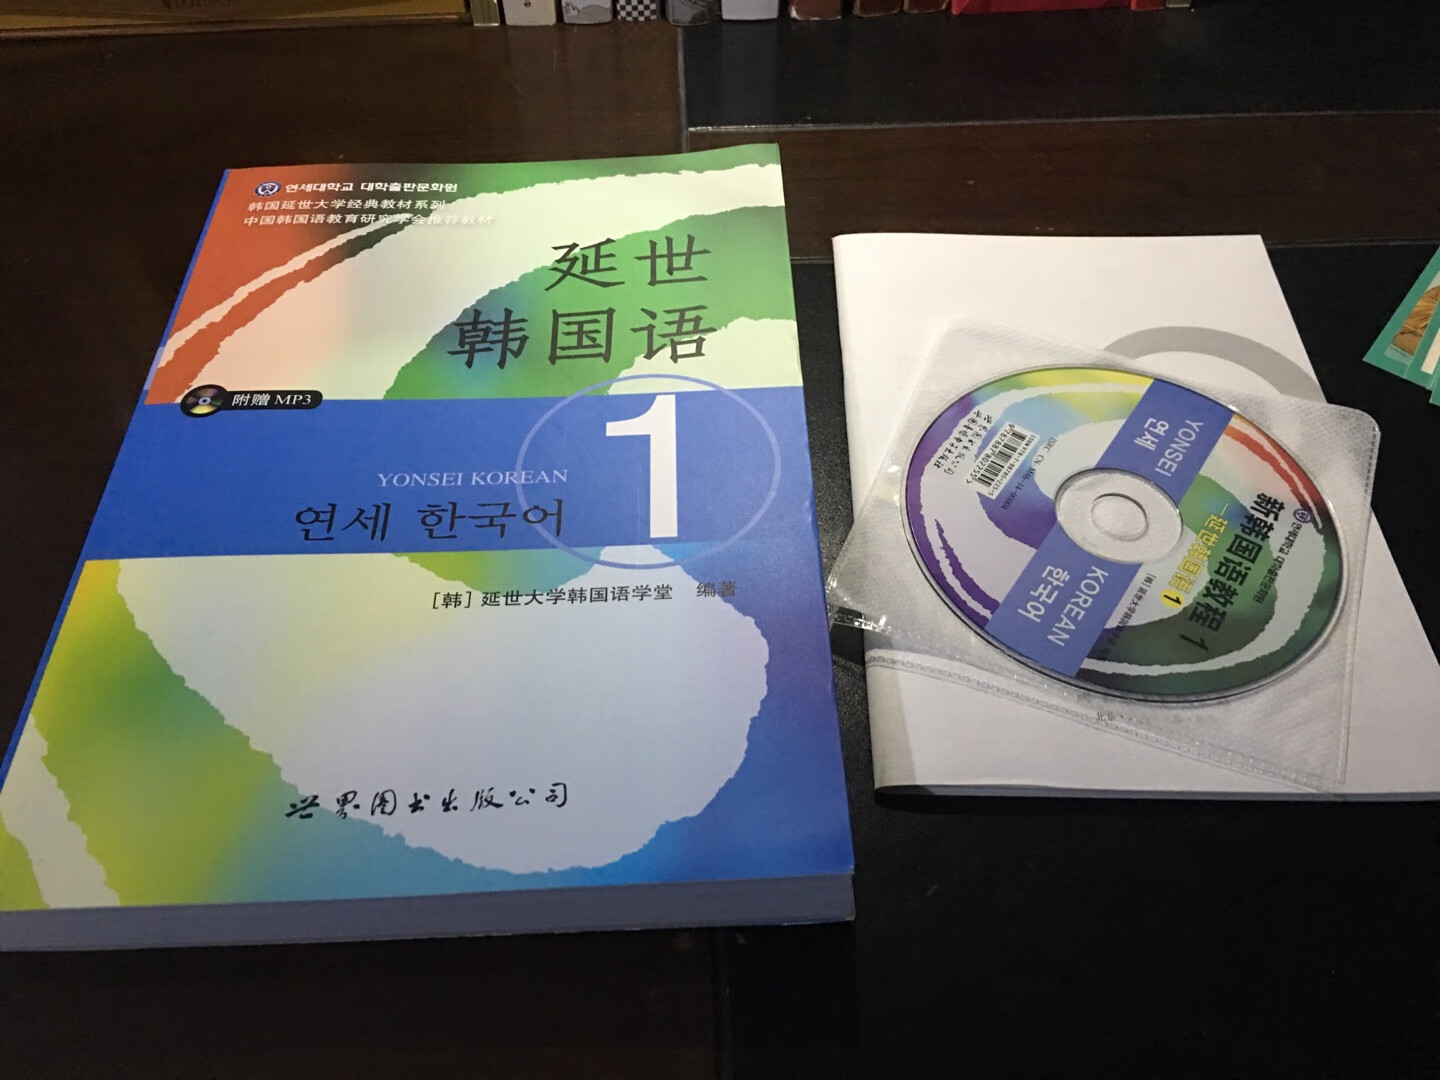 厚厚的一本，全彩印，有mp3光盘，想学习韩语的朋友可以购买。